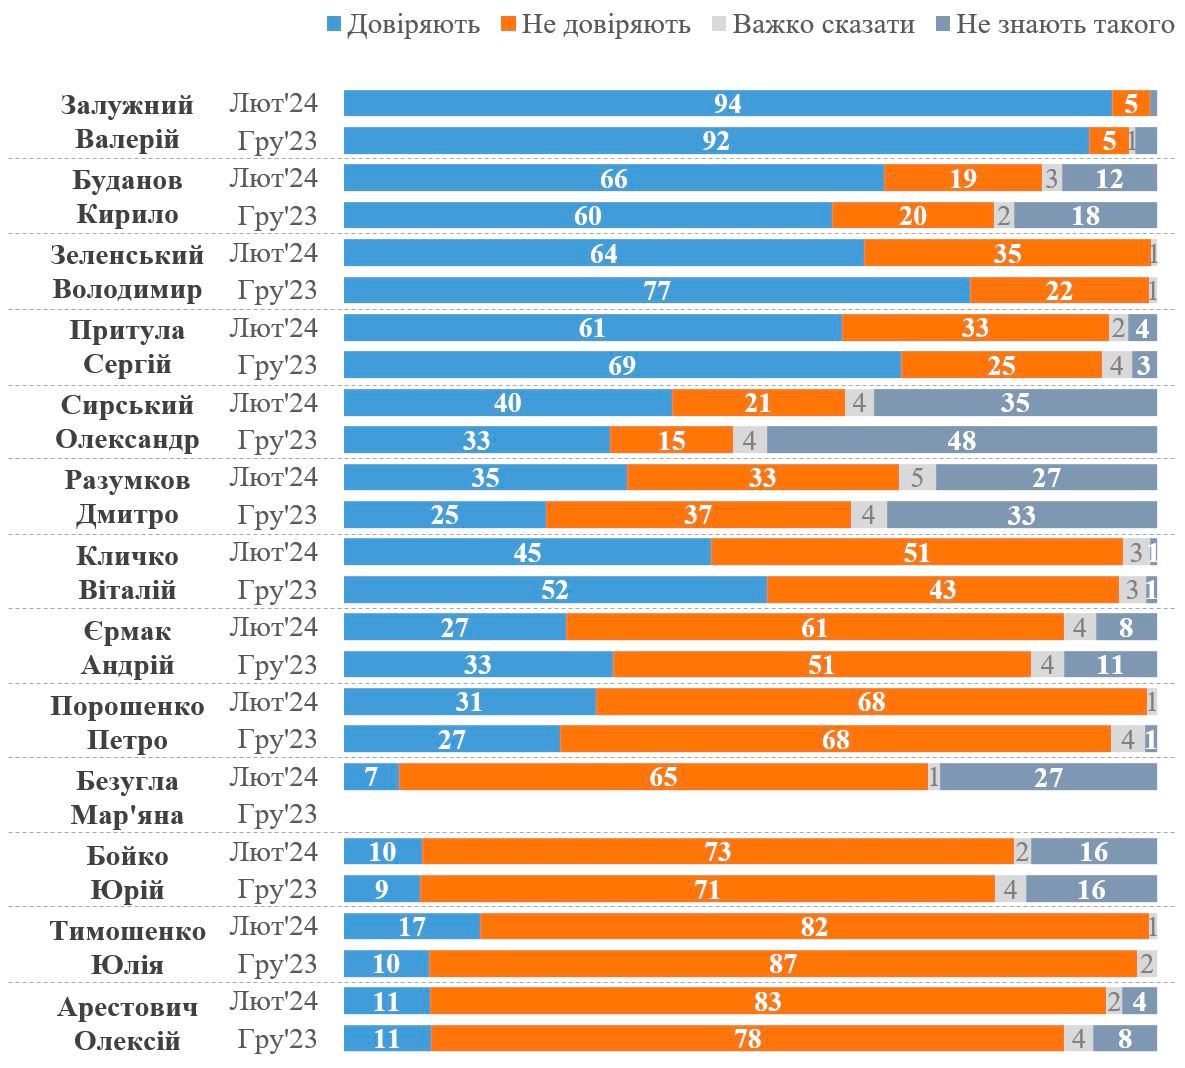 Диаграмма доверия населения к украинским деятелям. Источник - kiis.com.ua